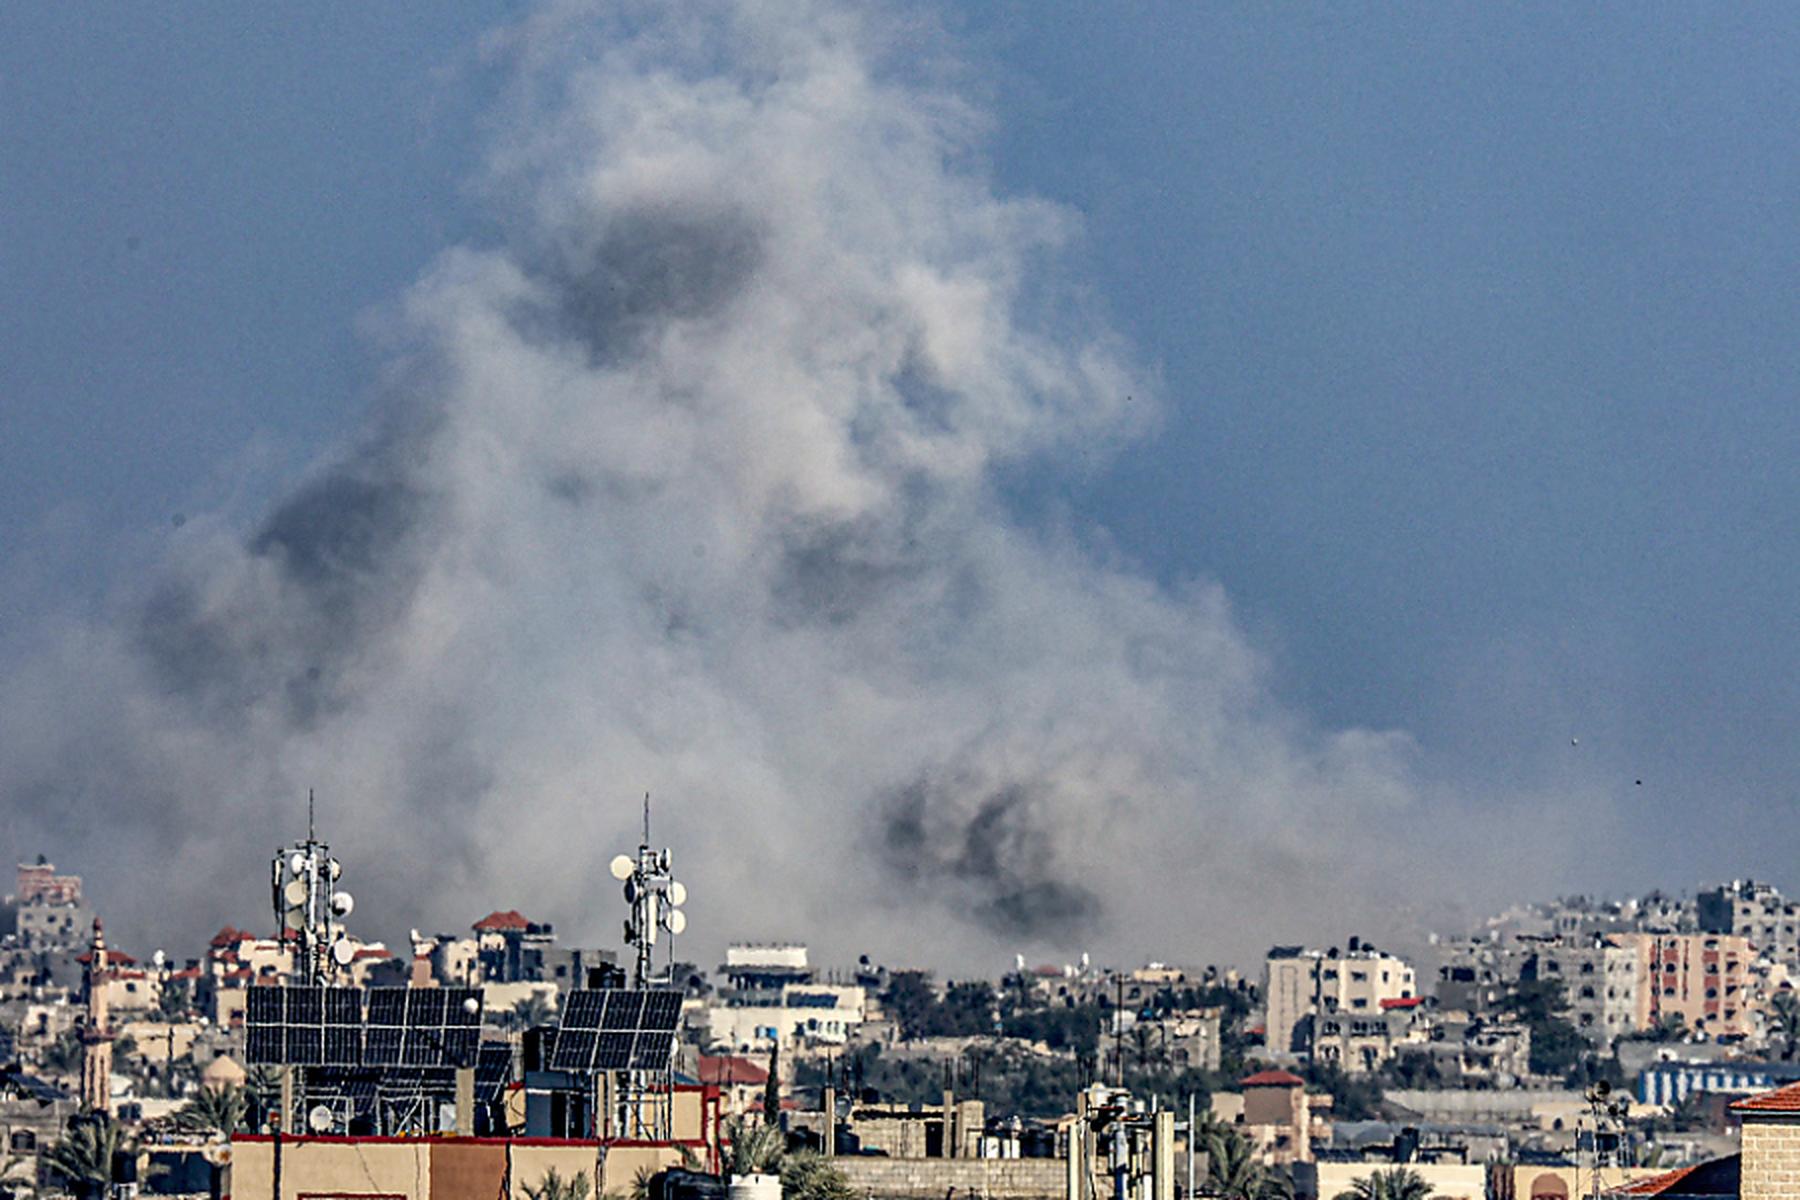 24.448 Tote seit Kriesbeginn | Hamas-Behörde meldet über 160 Tote im Gazastreifen in 24 Stunden